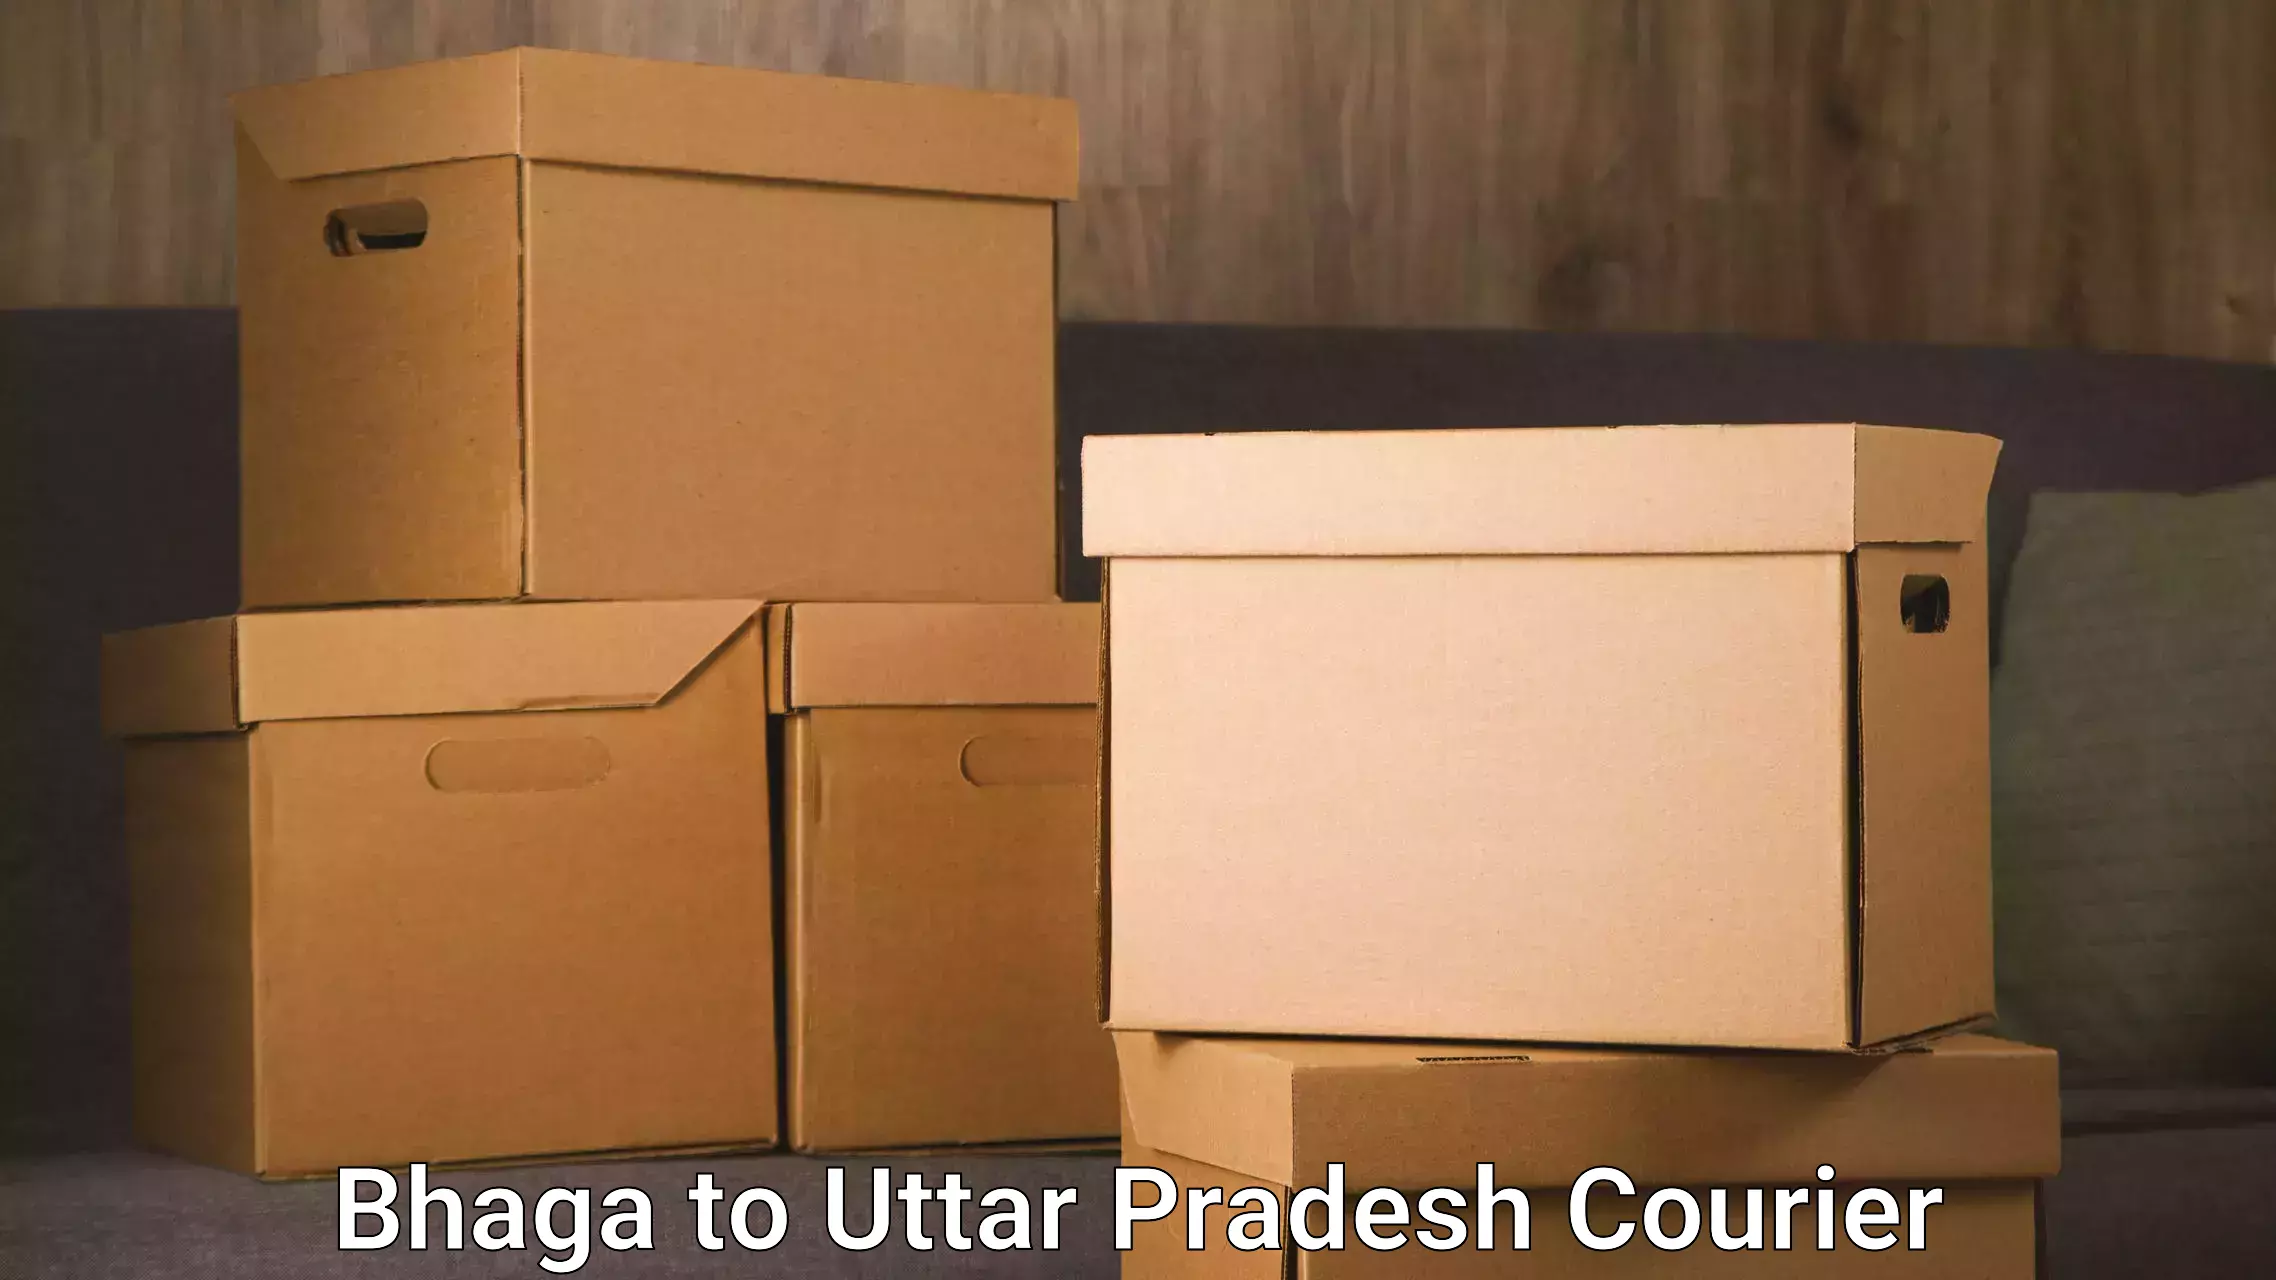 24-hour courier service in Bhaga to Uttar Pradesh